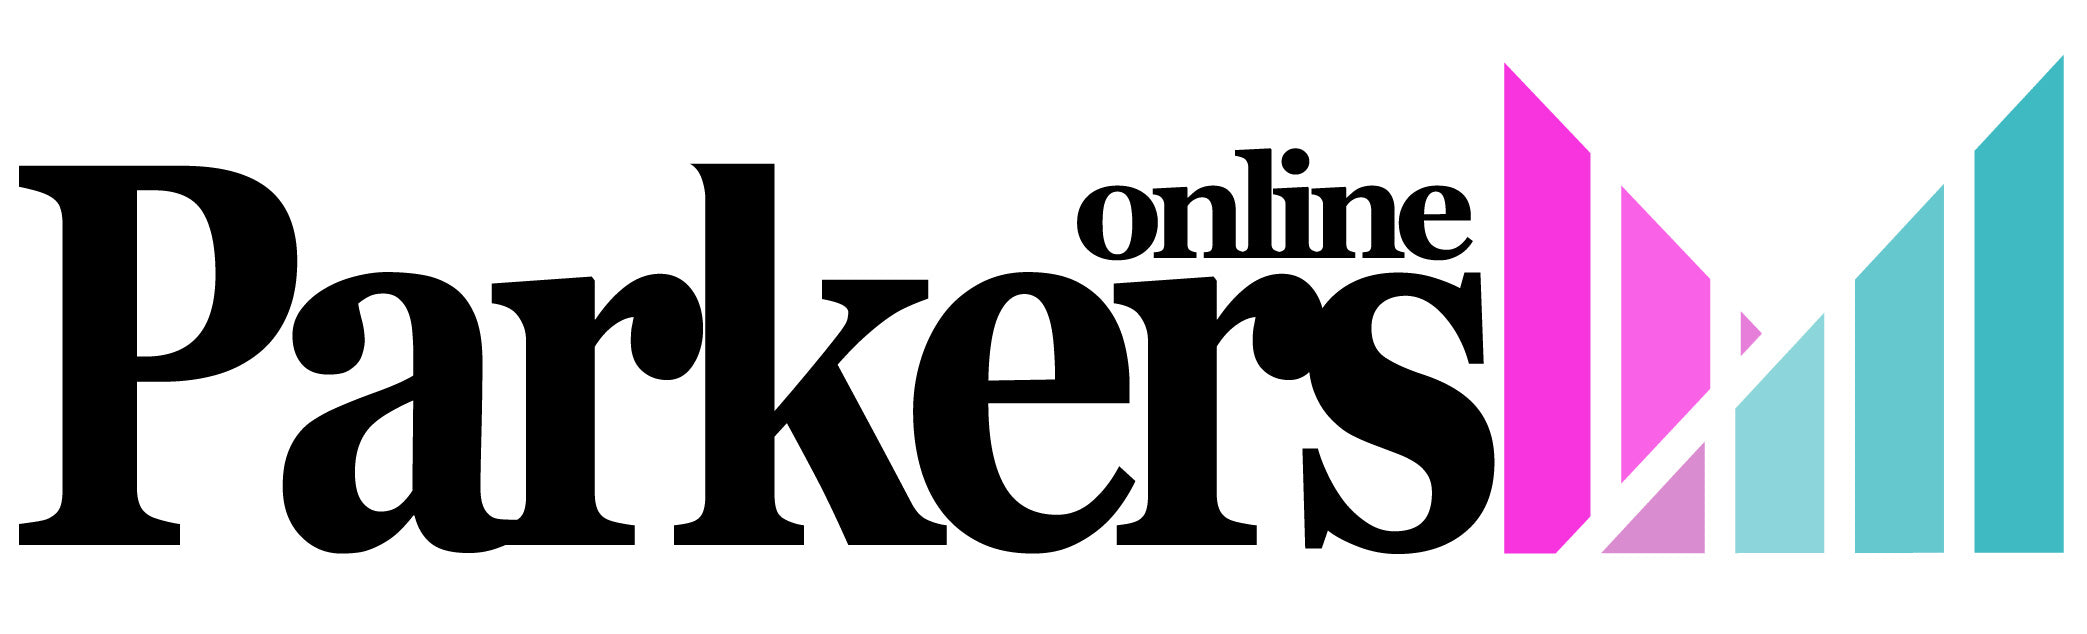 Parkers Online Ltd